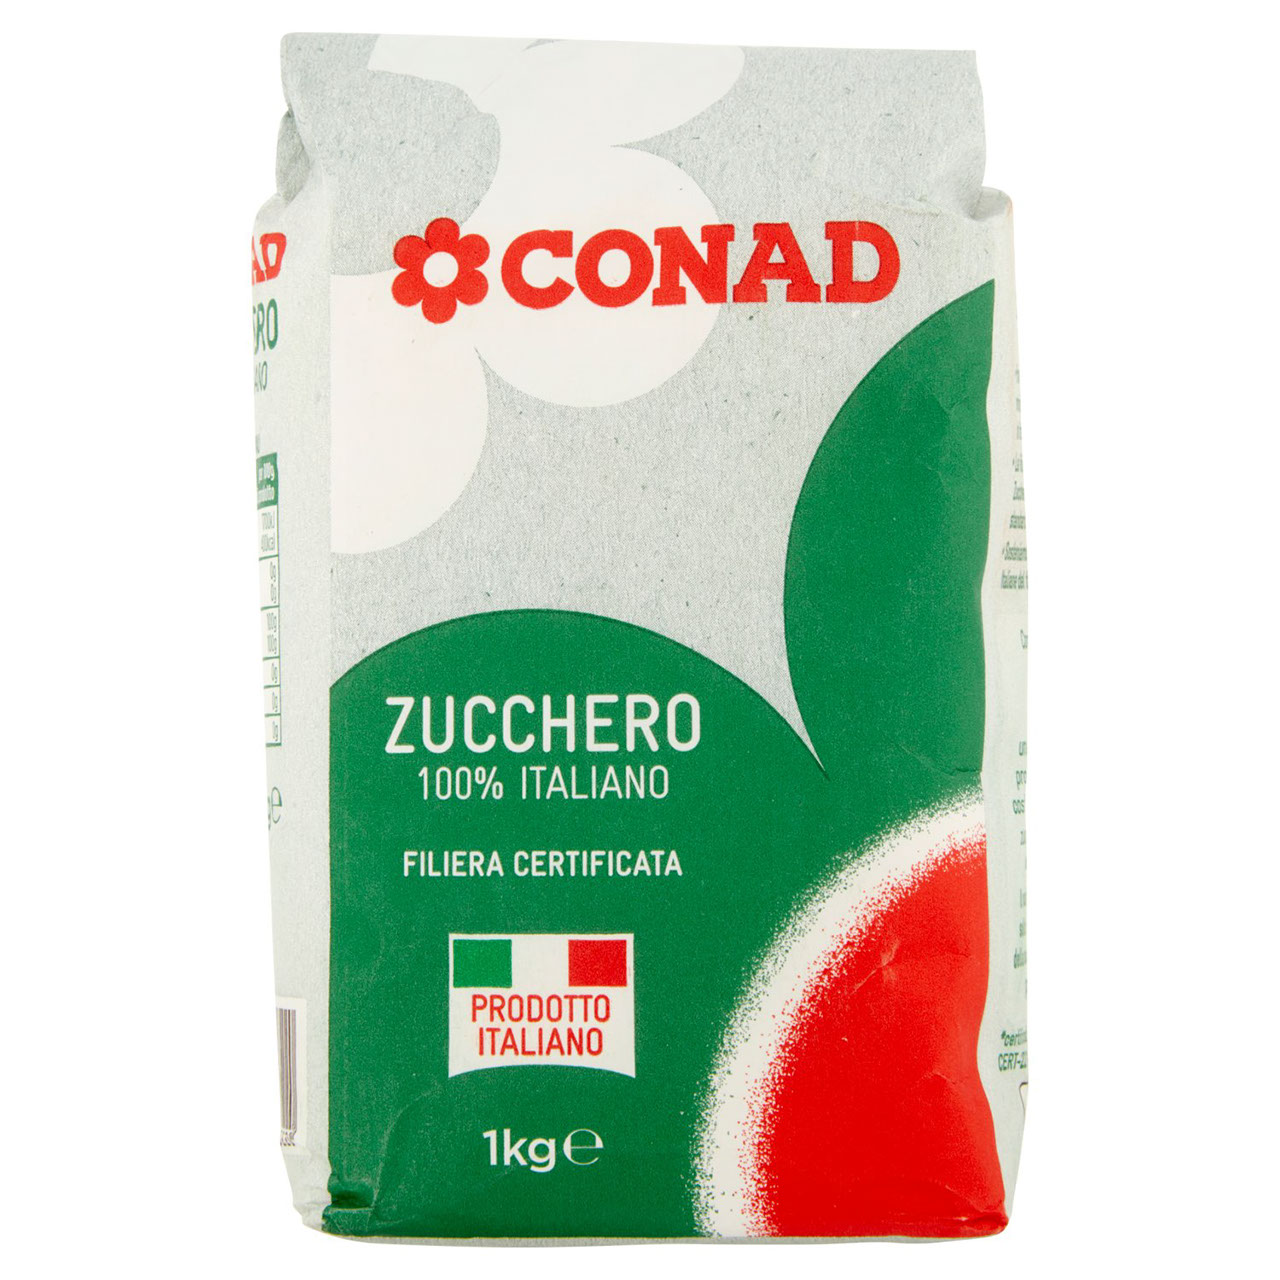 Zucchero 100% Italiano Conad in vendita online